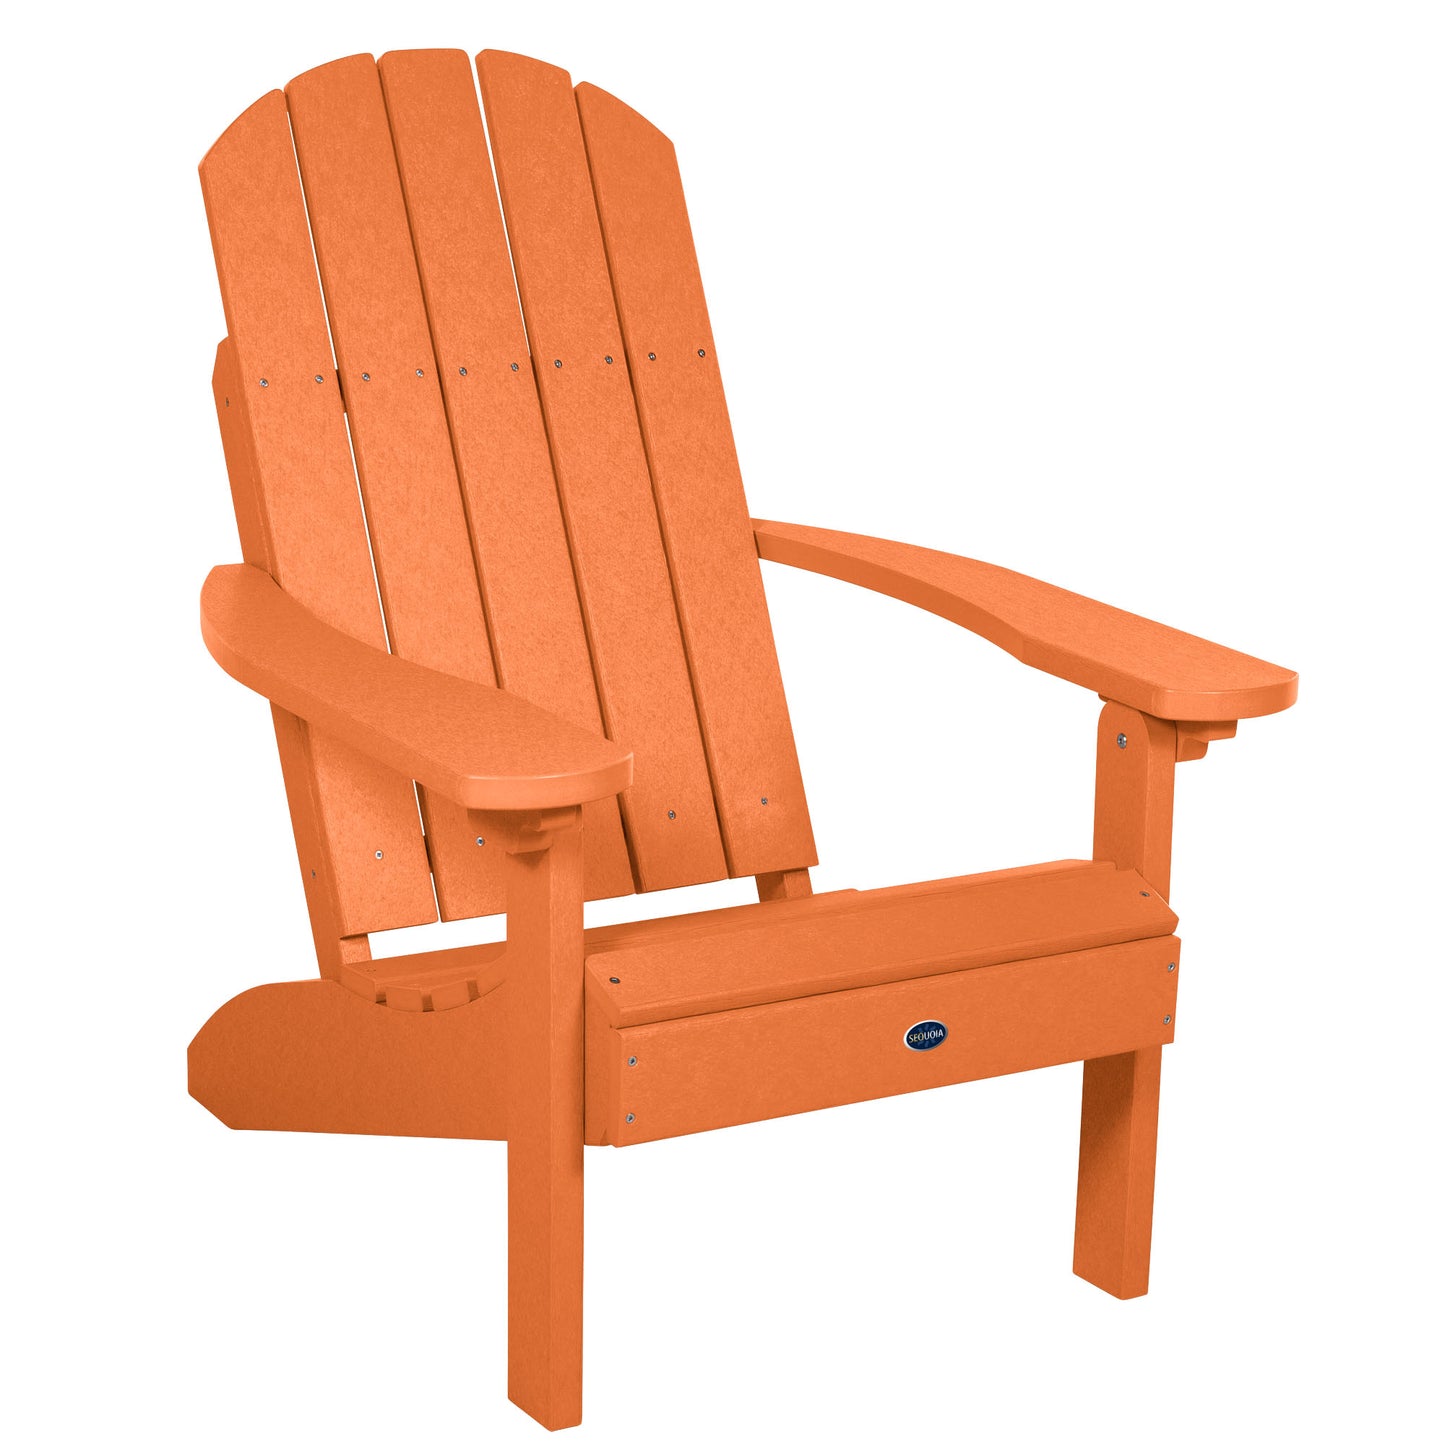 Sunrise Coast classic Adirondack chair in Citrus Orange